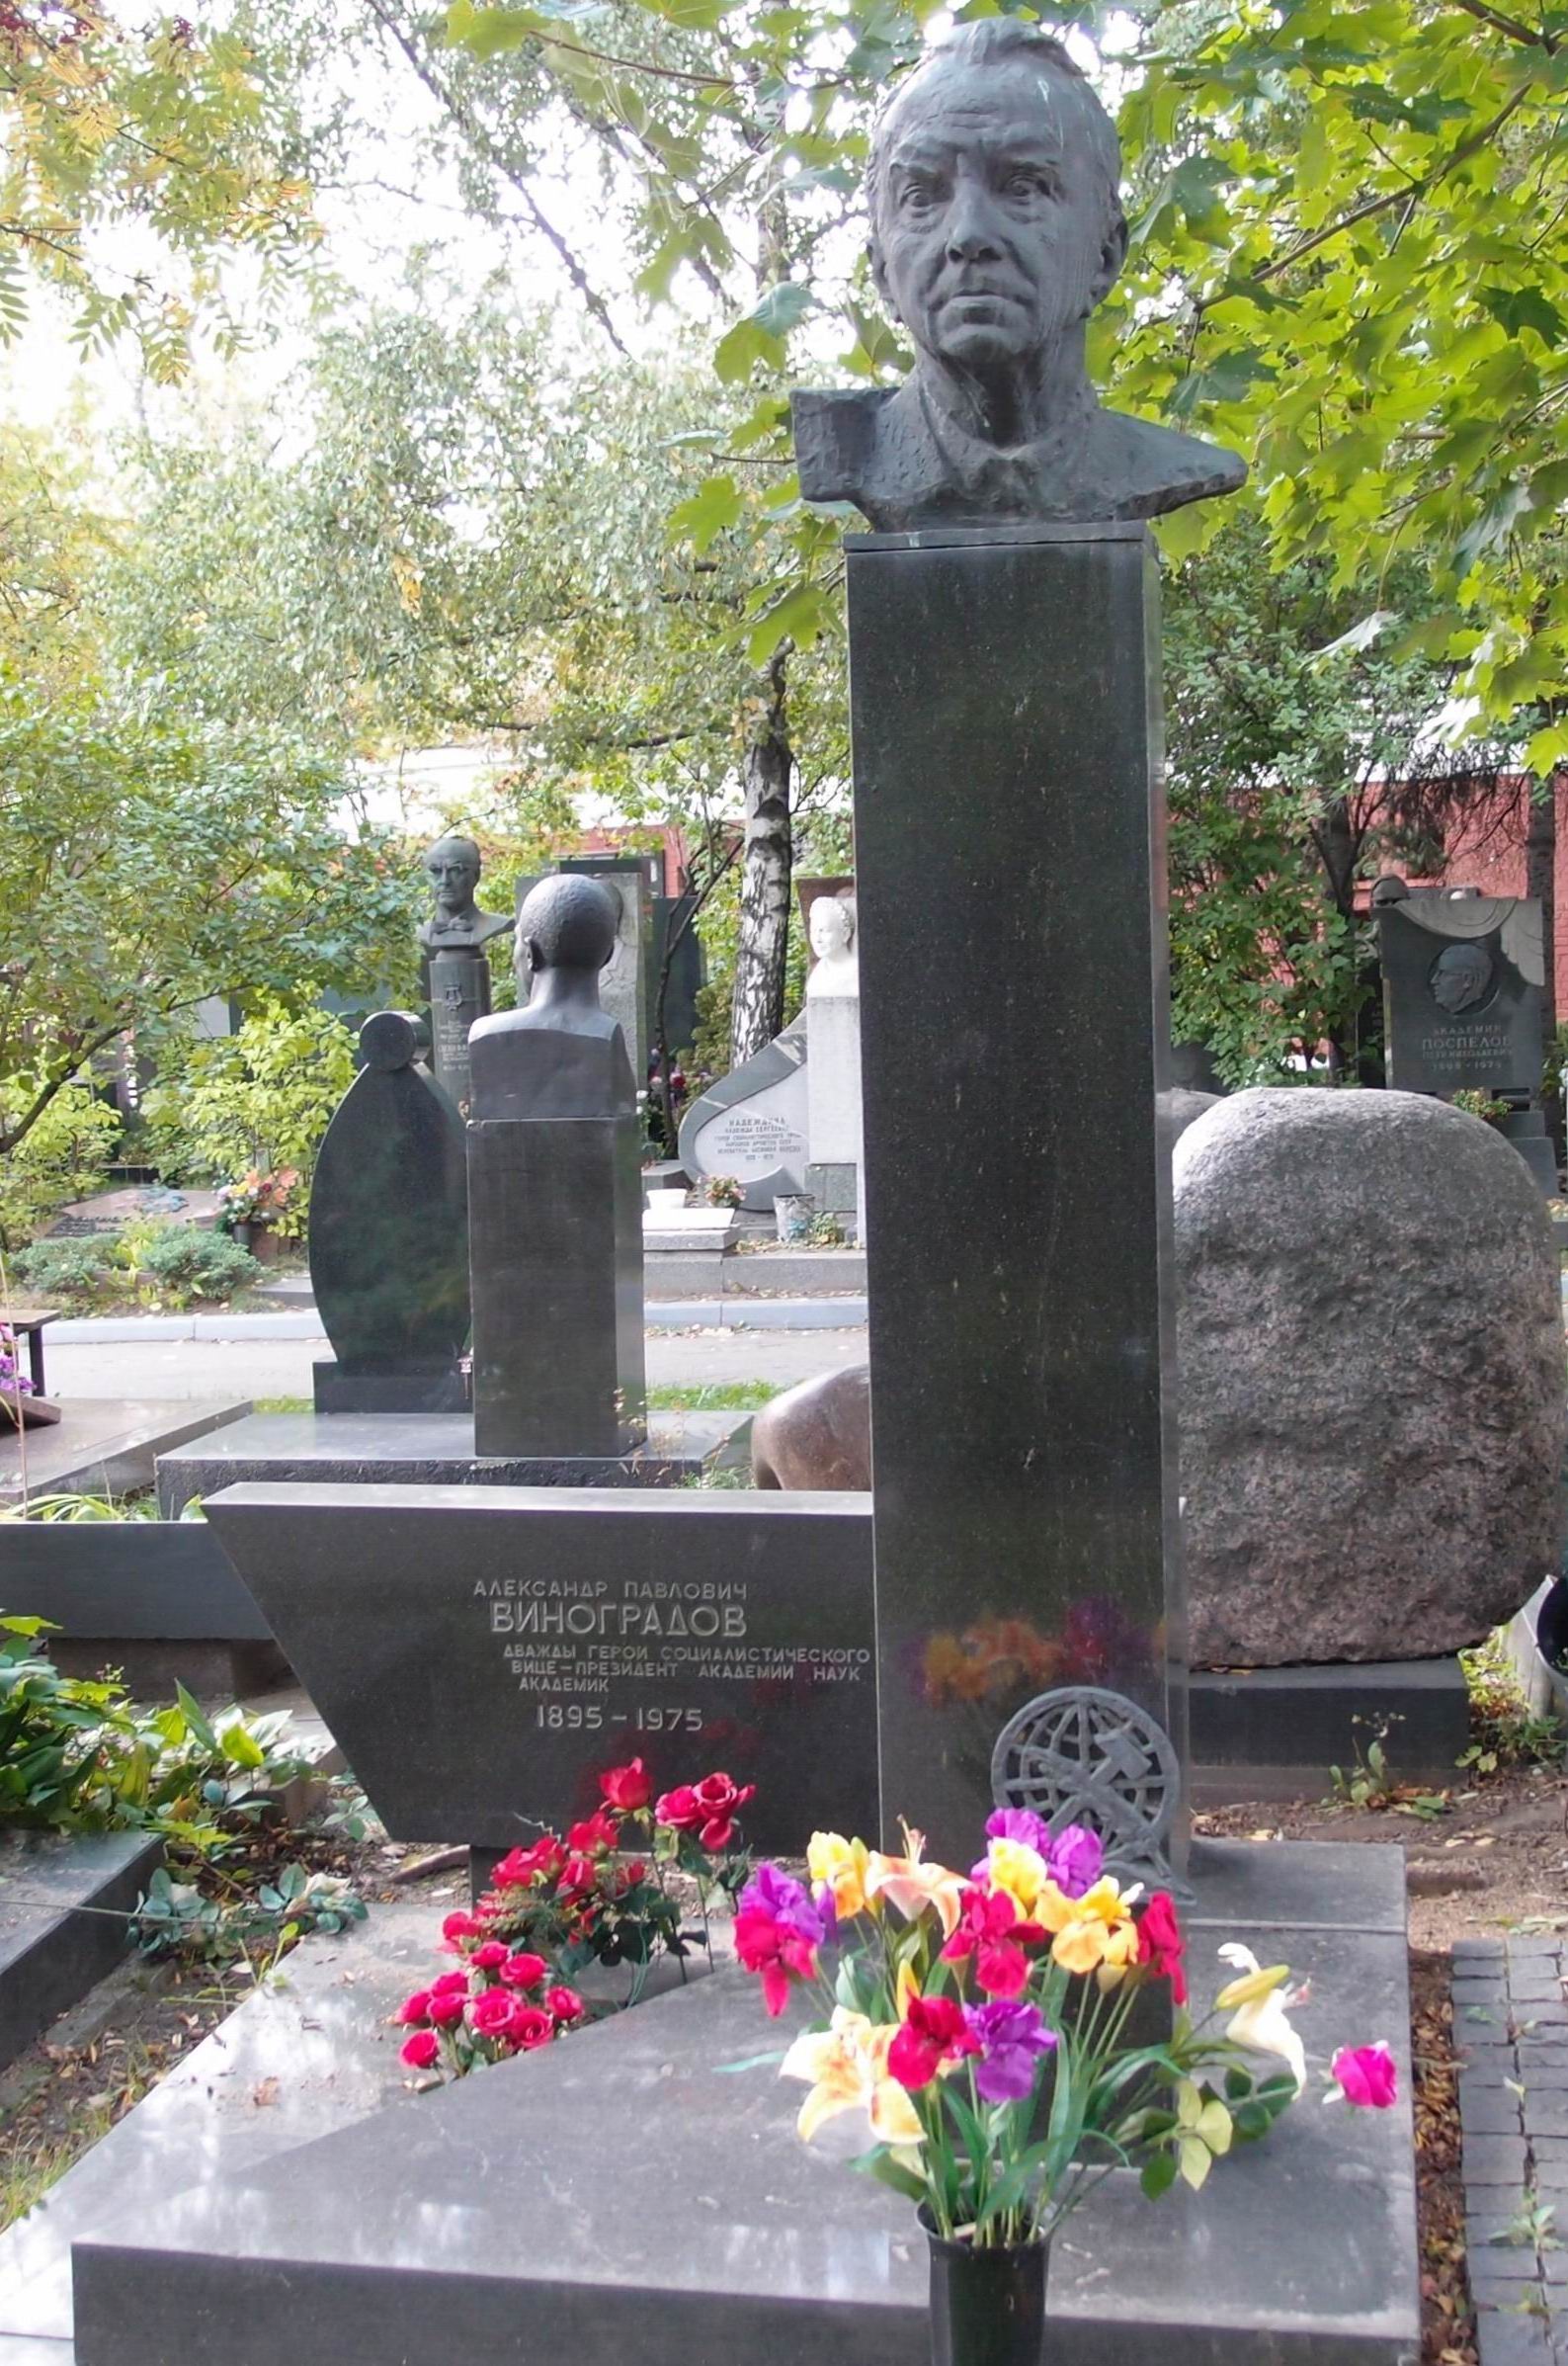 Памятник на могиле Виноградова А.П. (1895-1975), ск. З.Виленский, арх. М.Виленская, на Новодевичьем кладбище (9-1-8). Нажмите левую кнопку мыши чтобы увидеть фрагмент памятника.